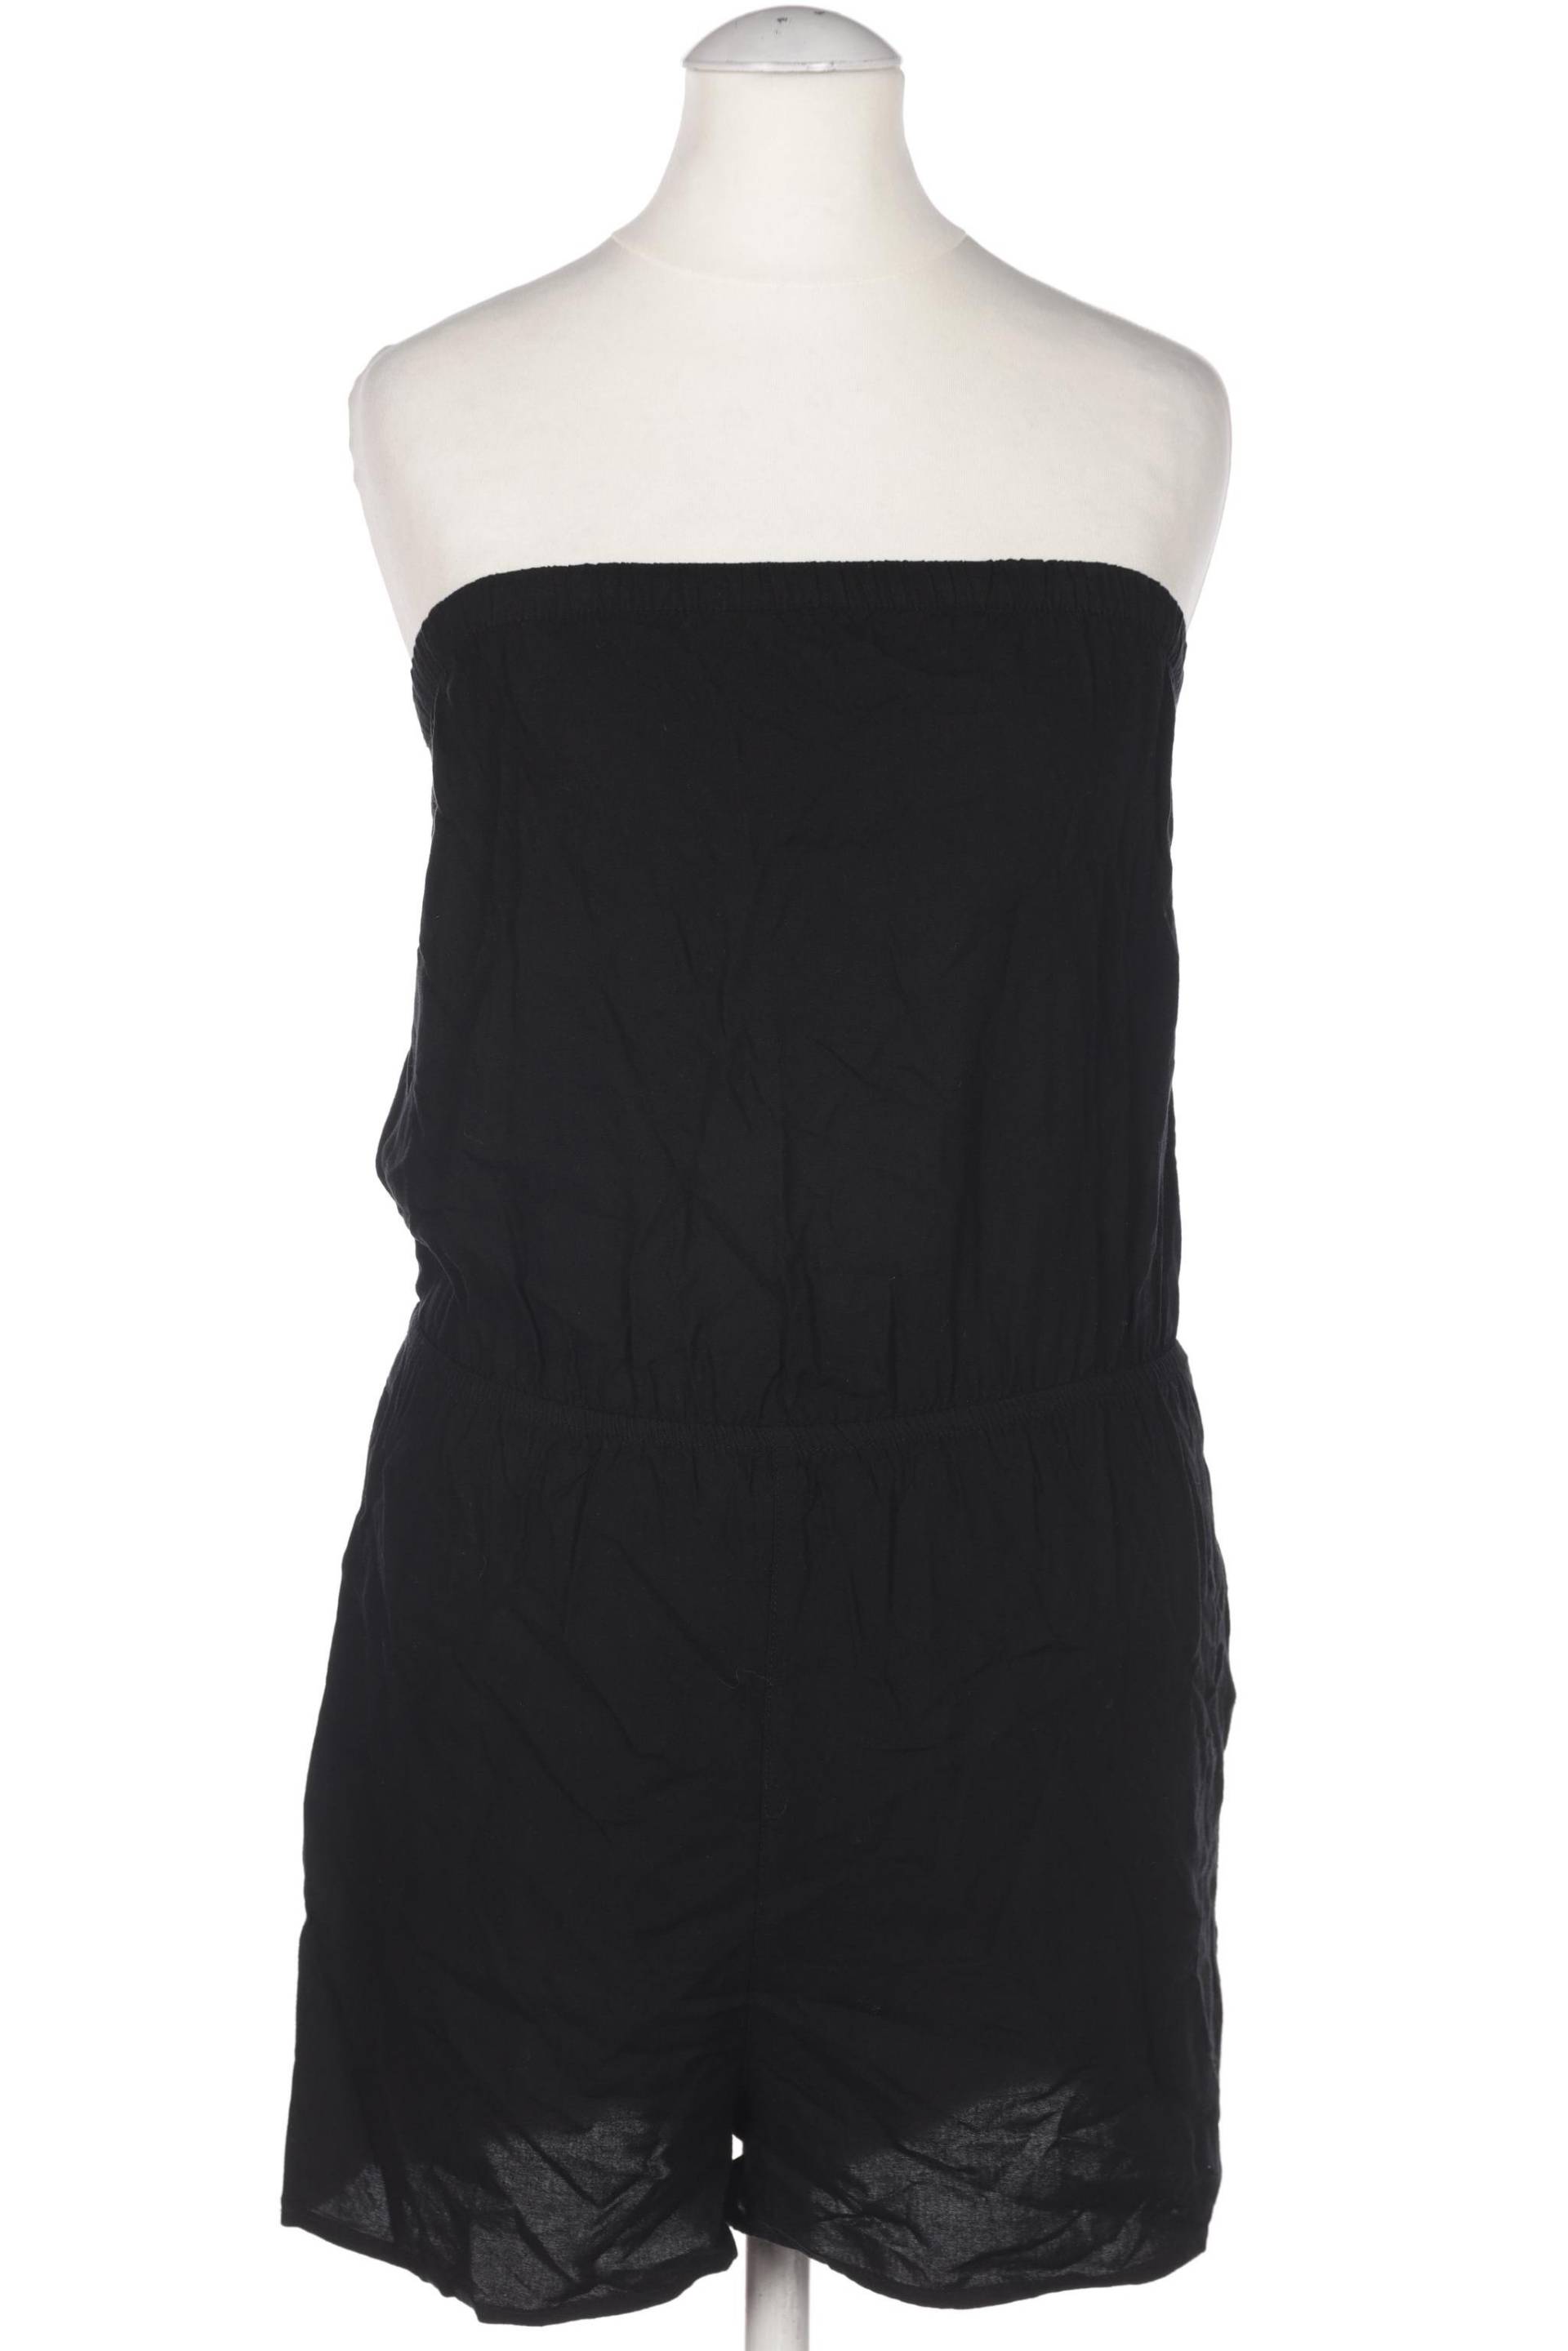 H&M Damen Jumpsuit/Overall, schwarz von H&M